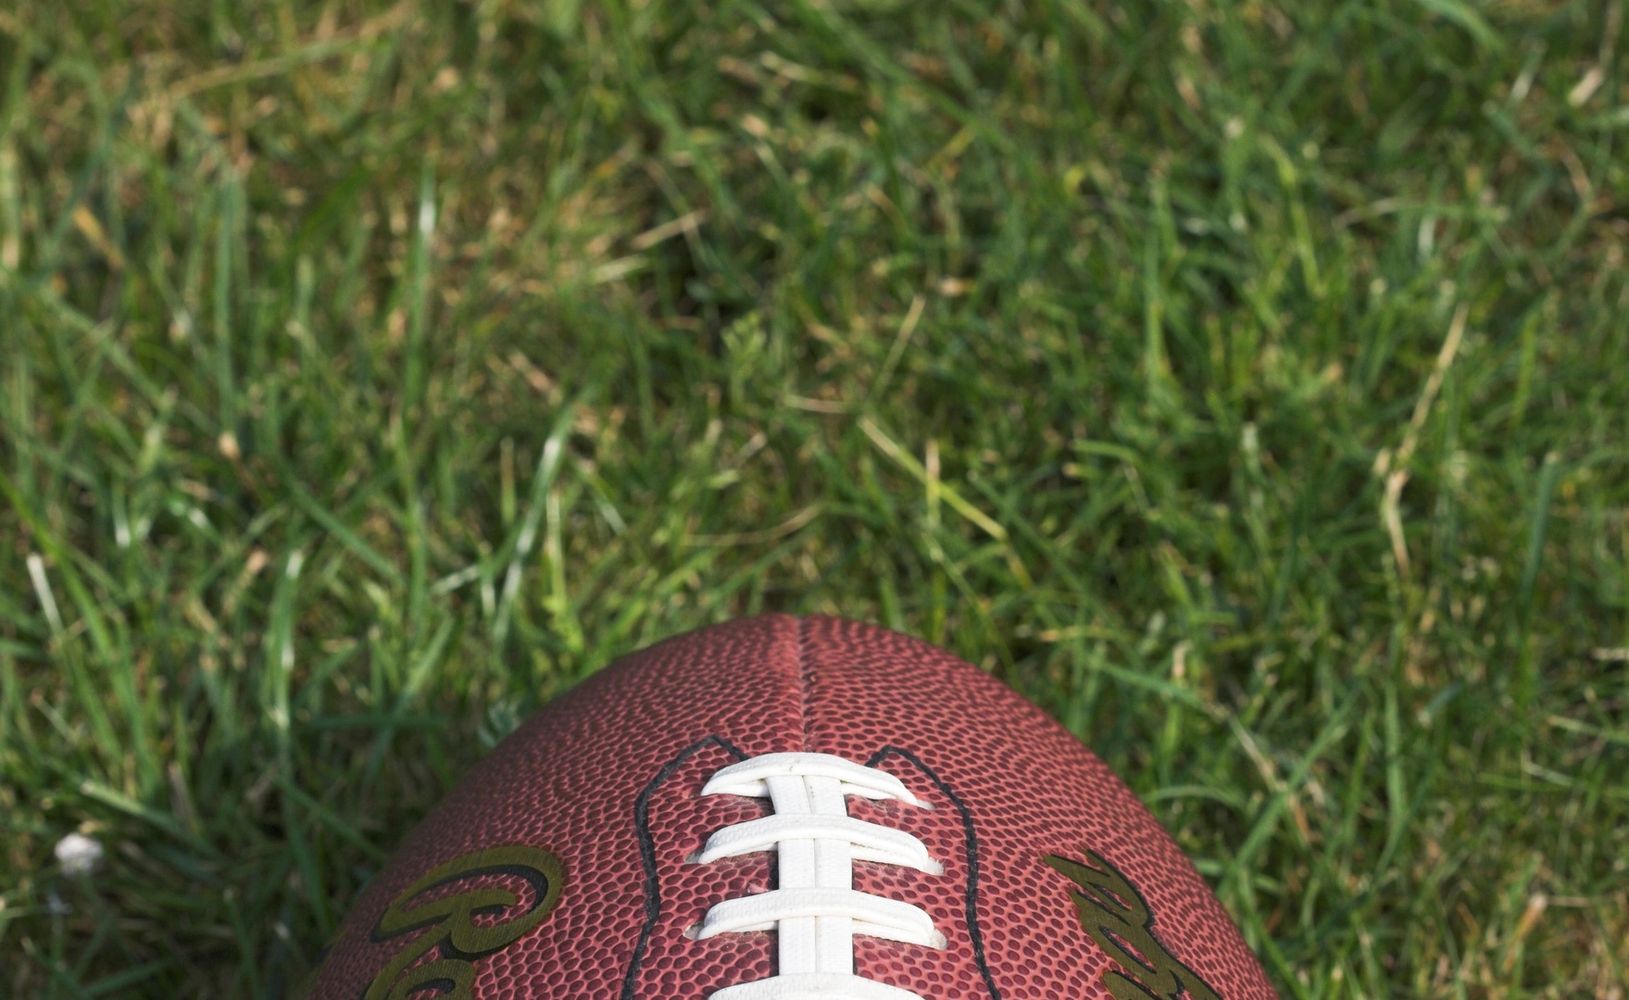 Football on a grass field